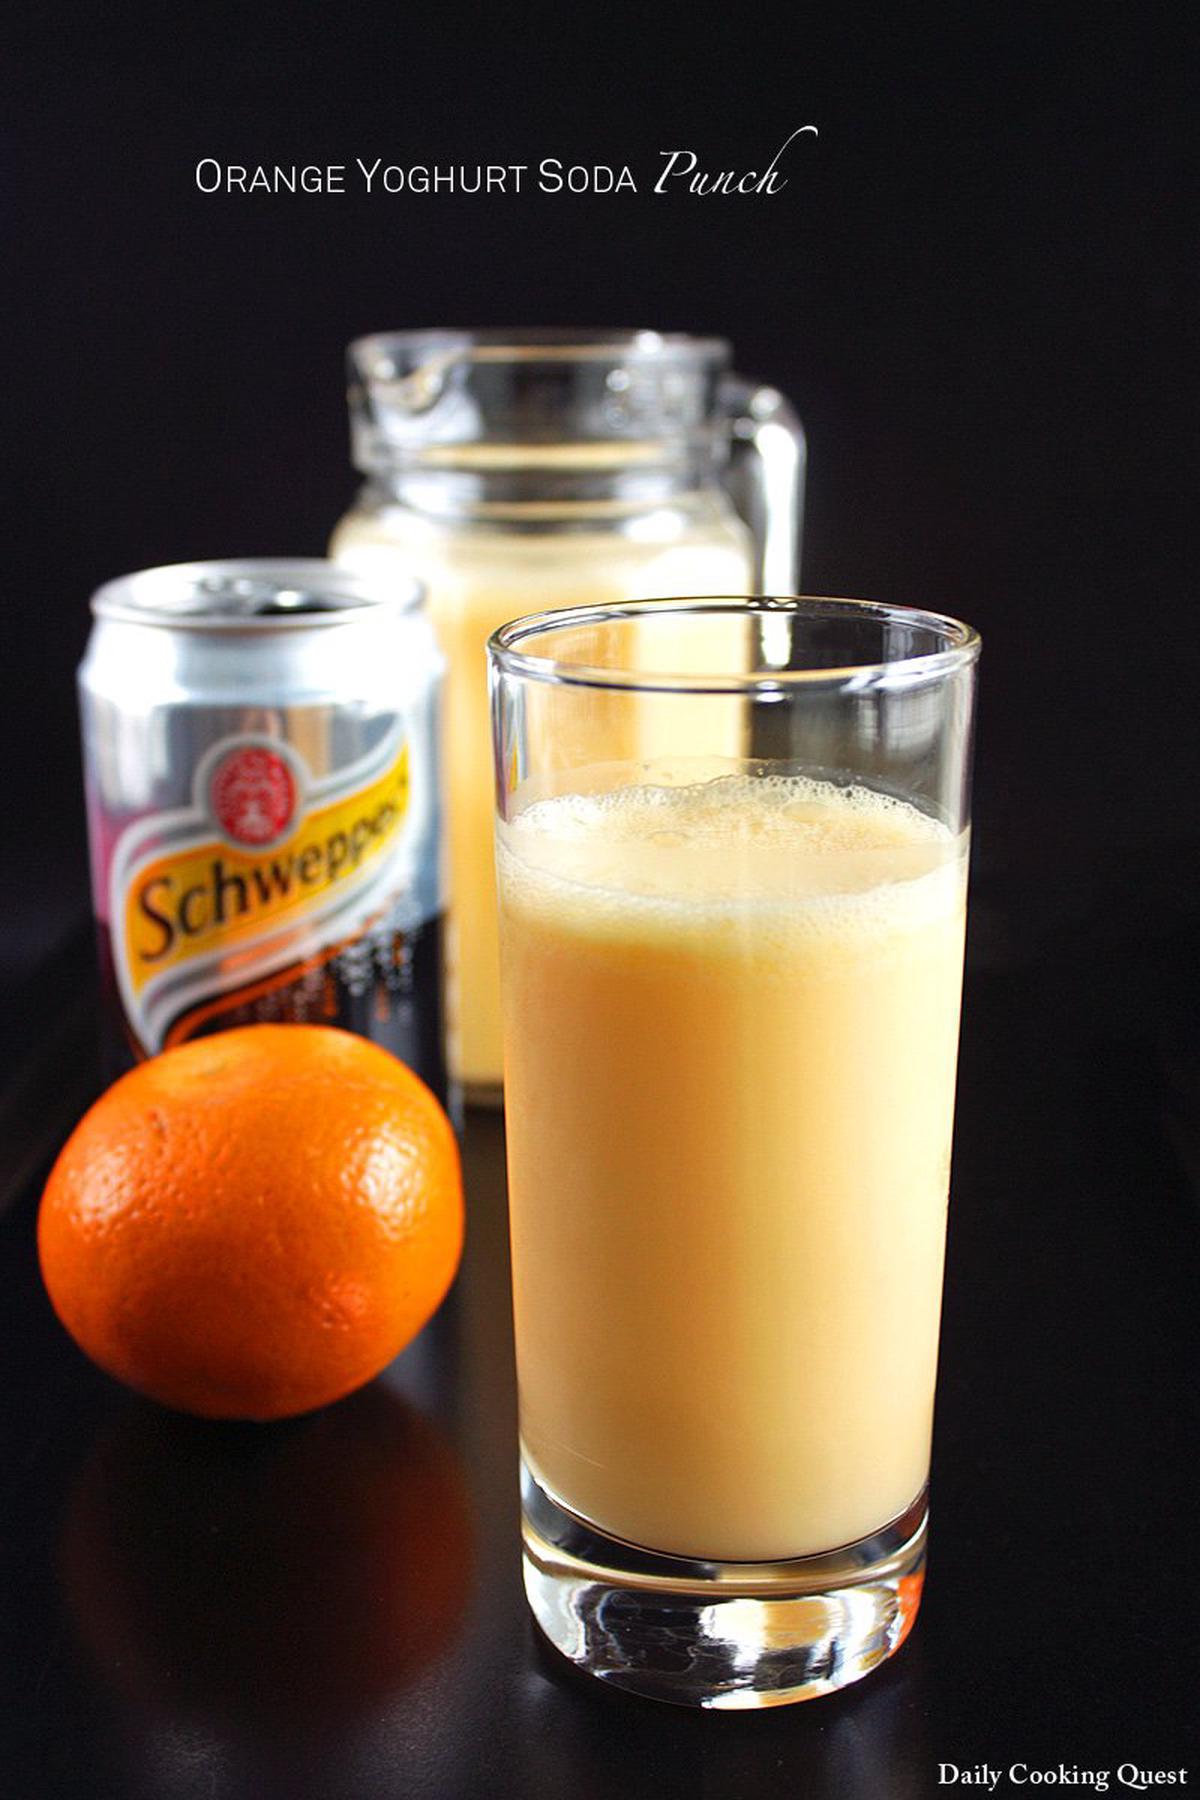 Orange Yoghurt Soda Punch